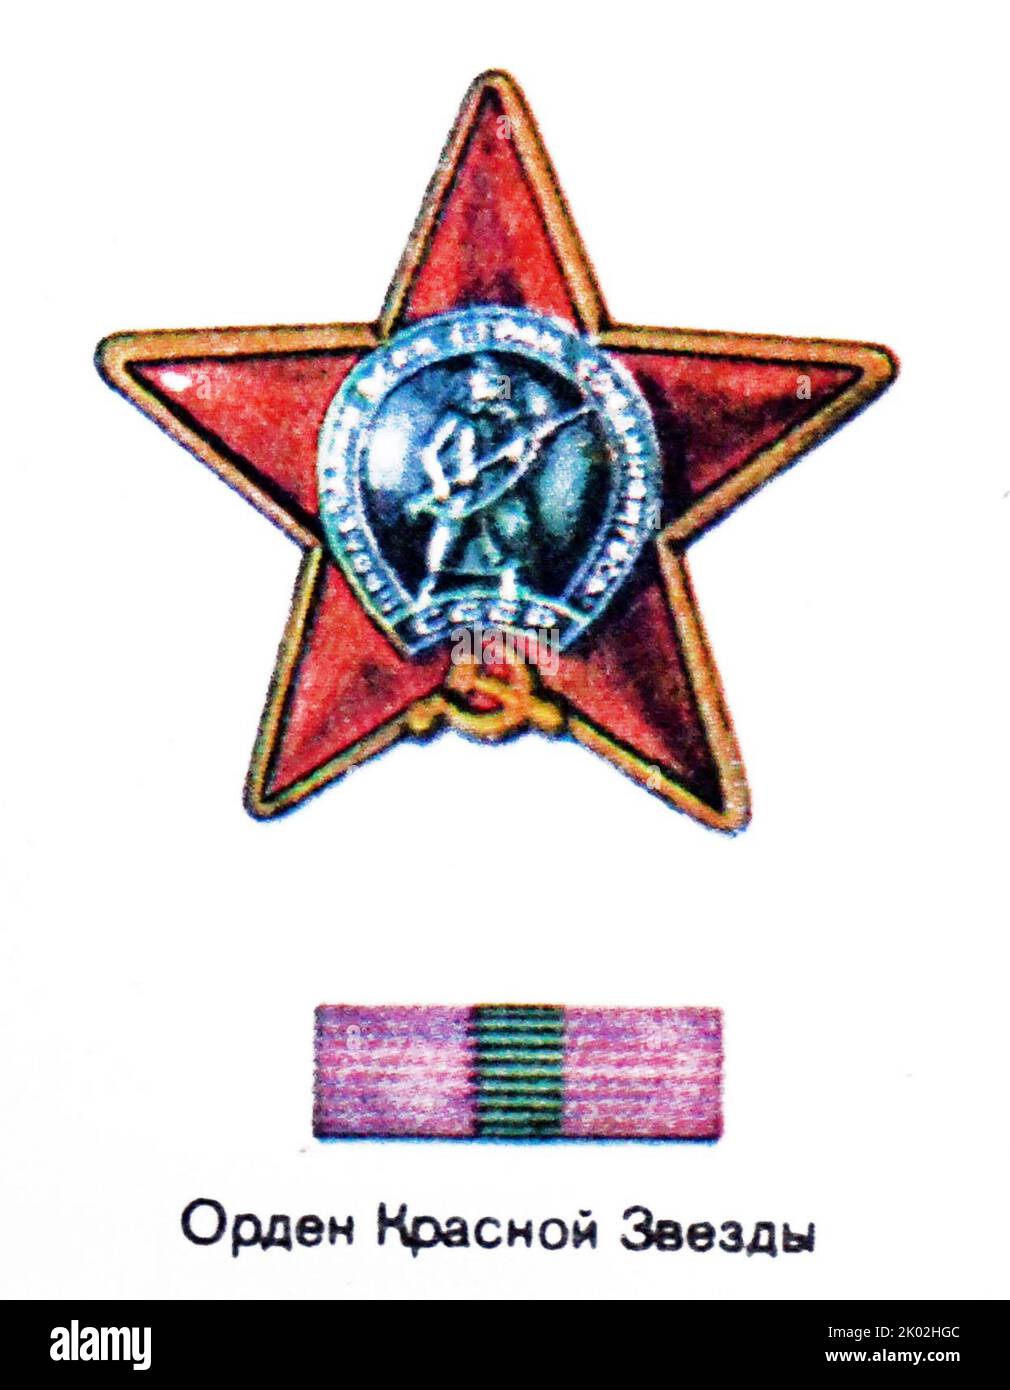 L'Ordine della Stella Rossa fu una decorazione militare dell'Unione Sovietica. Fu istituito con decreto del Presidio del Soviet Supremo dell'URSS del 6 aprile 1930 Foto Stock